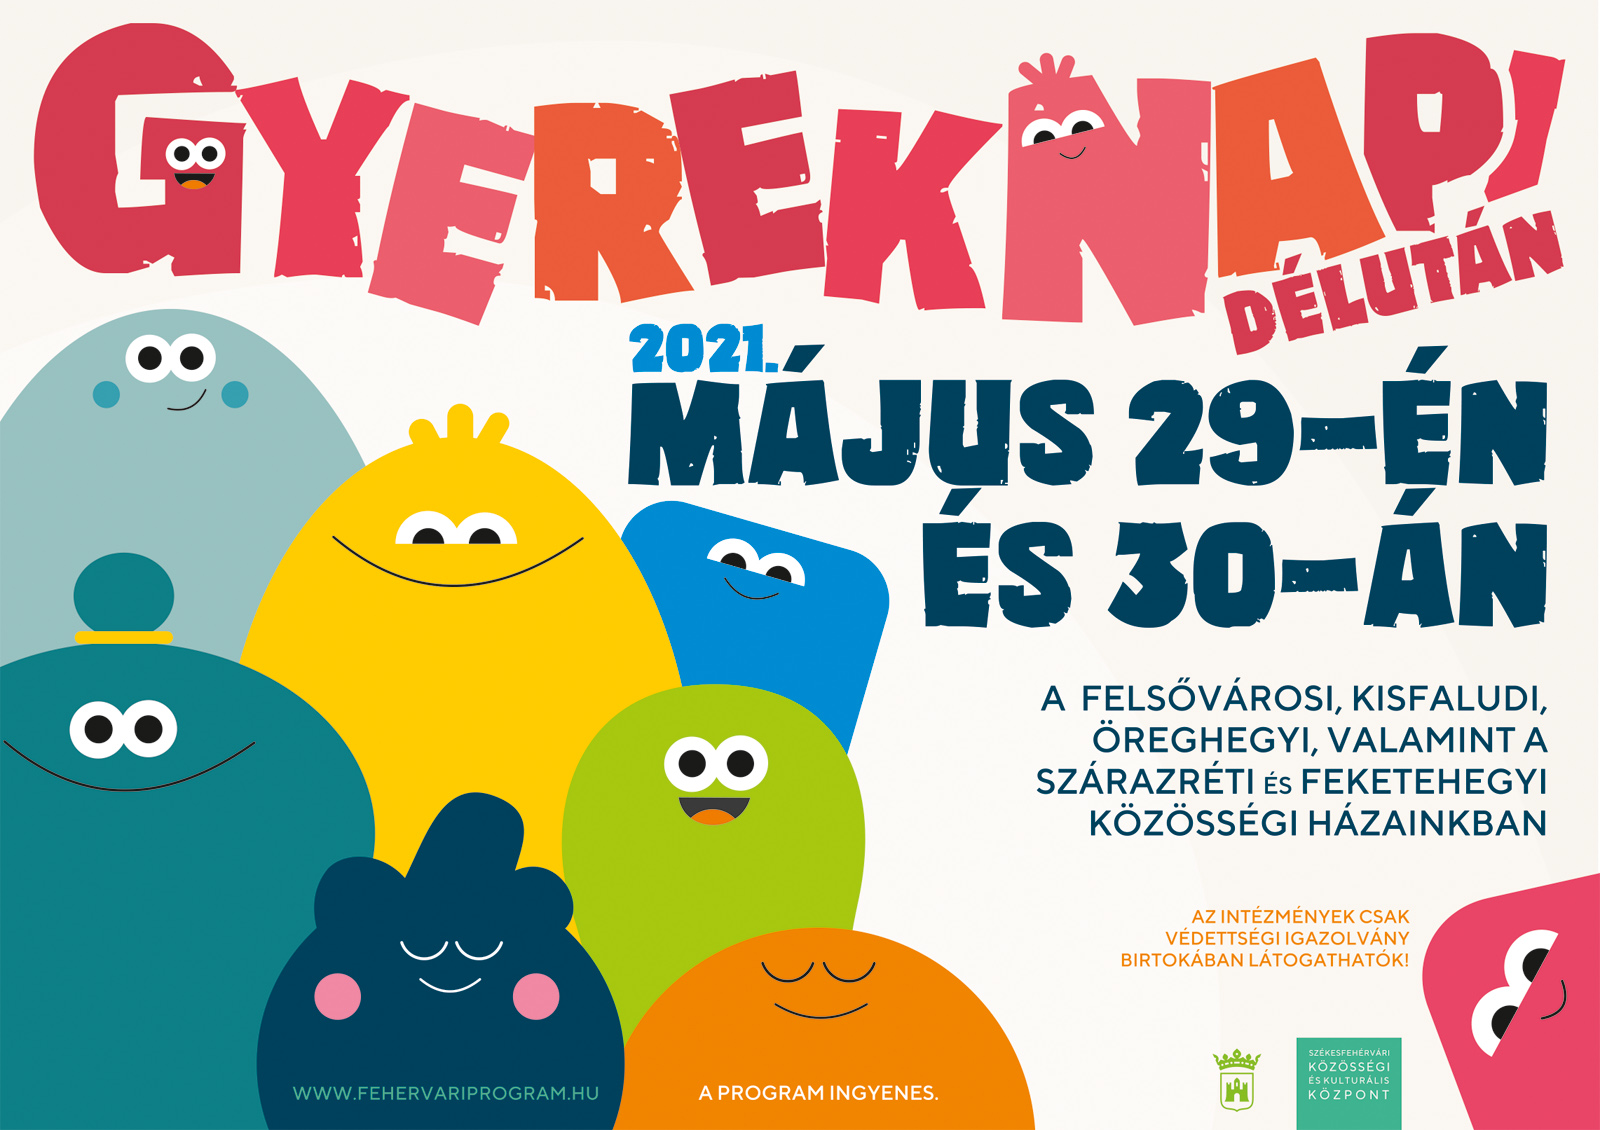 Szombaton és vasárnap is gyermeknapi programok Székesfehérváron!